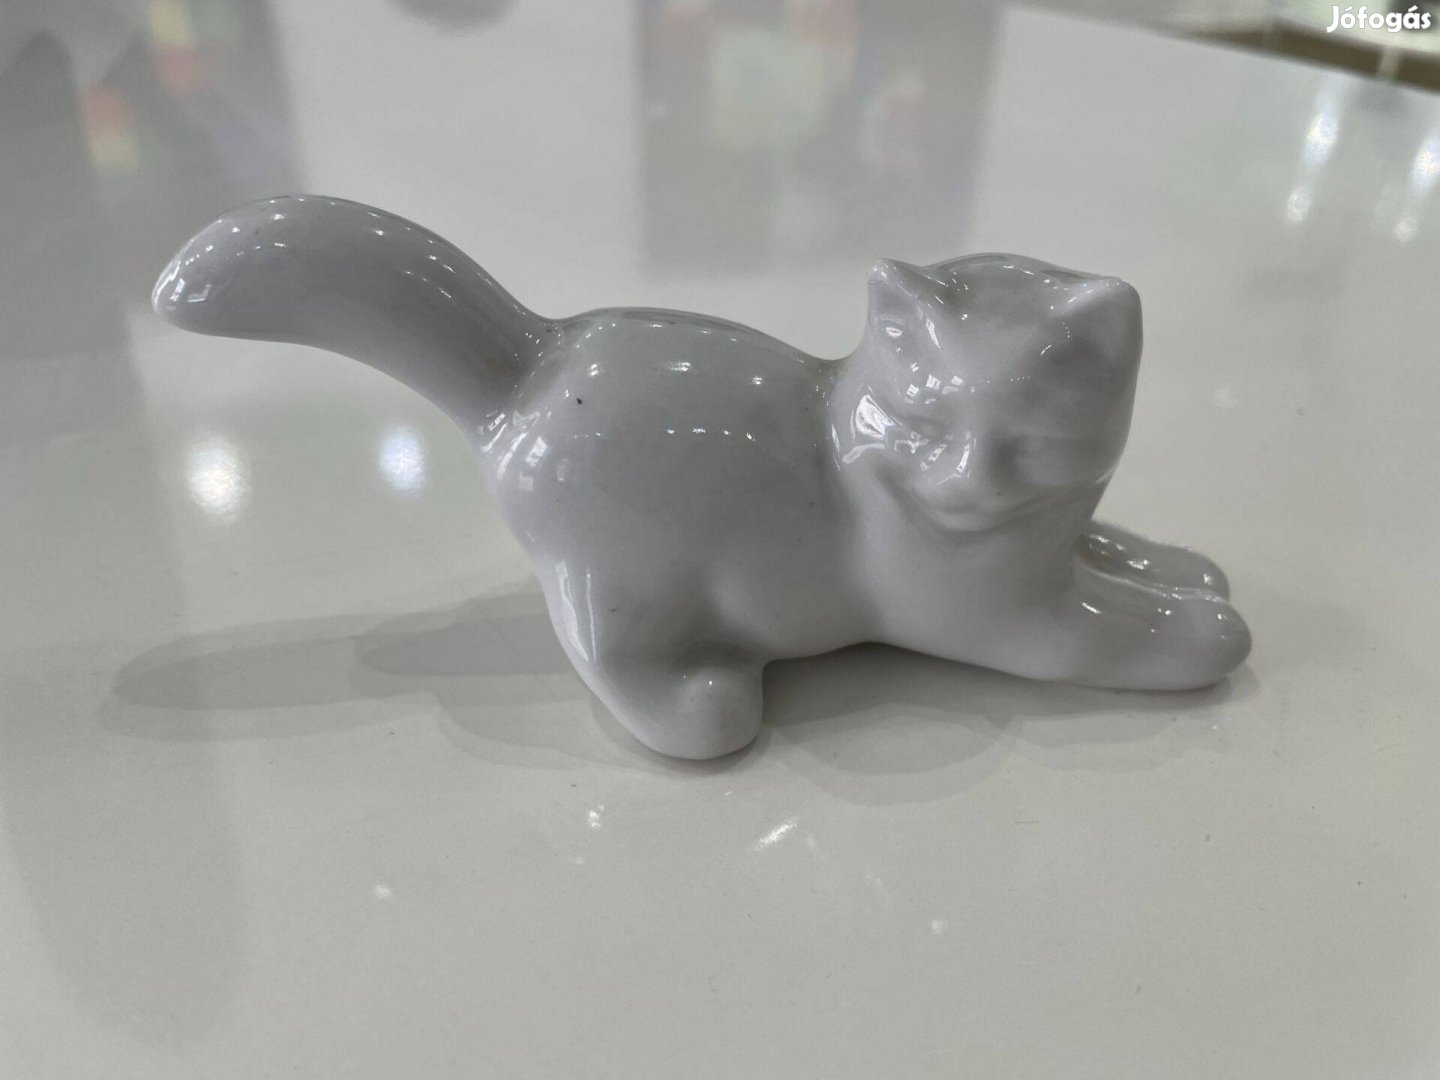 Zsolnay porcelán macska cica Sinkó András terve állatfigura